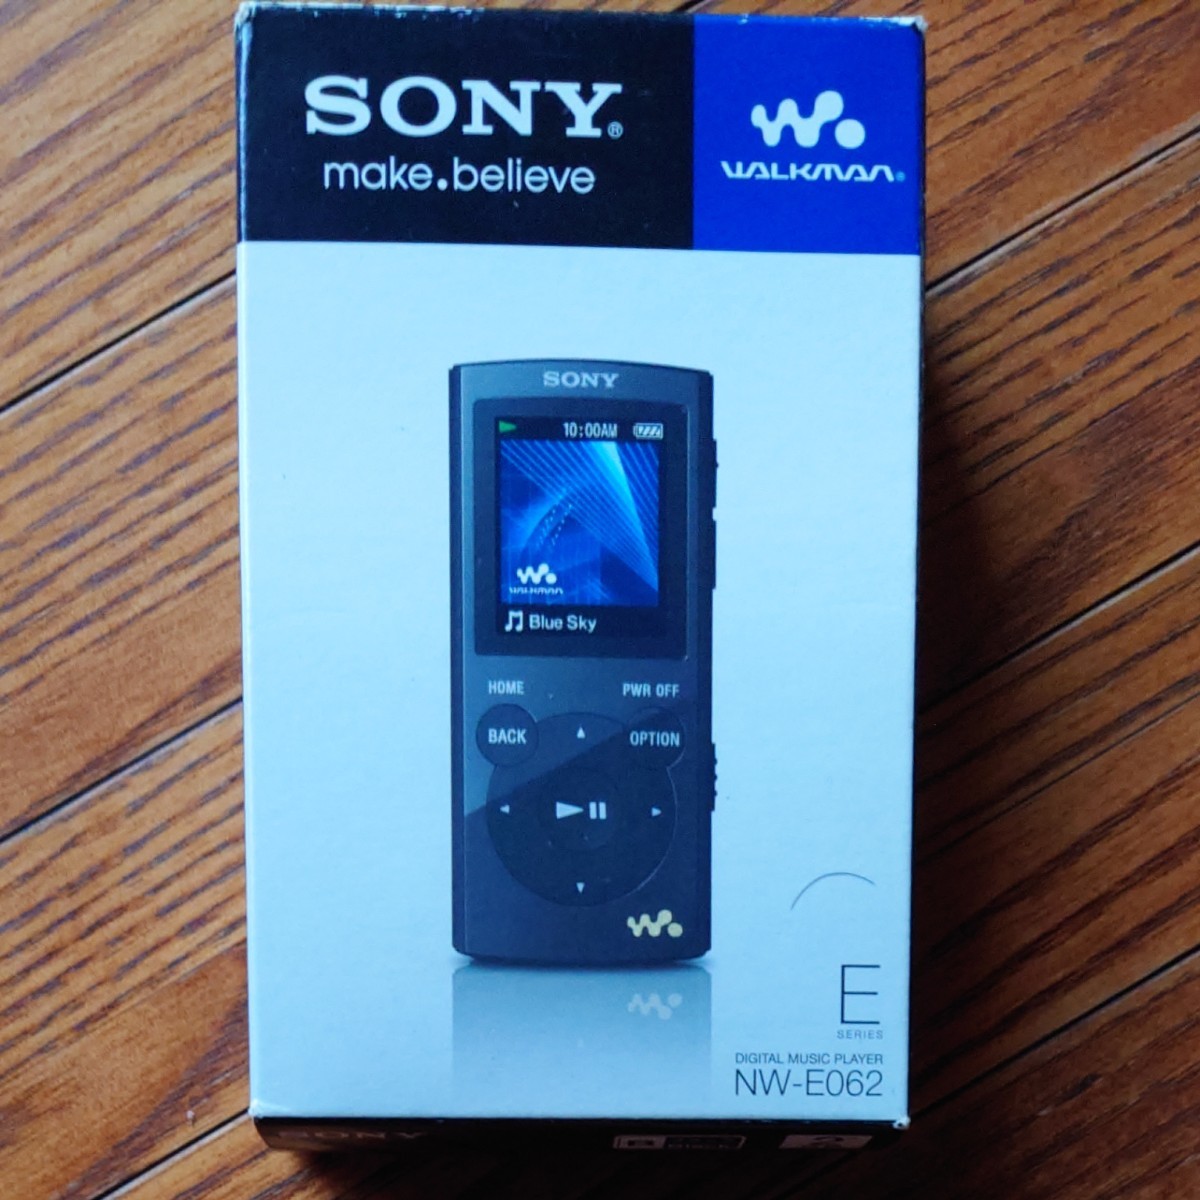 SONY ウォークマン Eシリーズ 2GB ブラック NW-E062 世界の 3840円引き